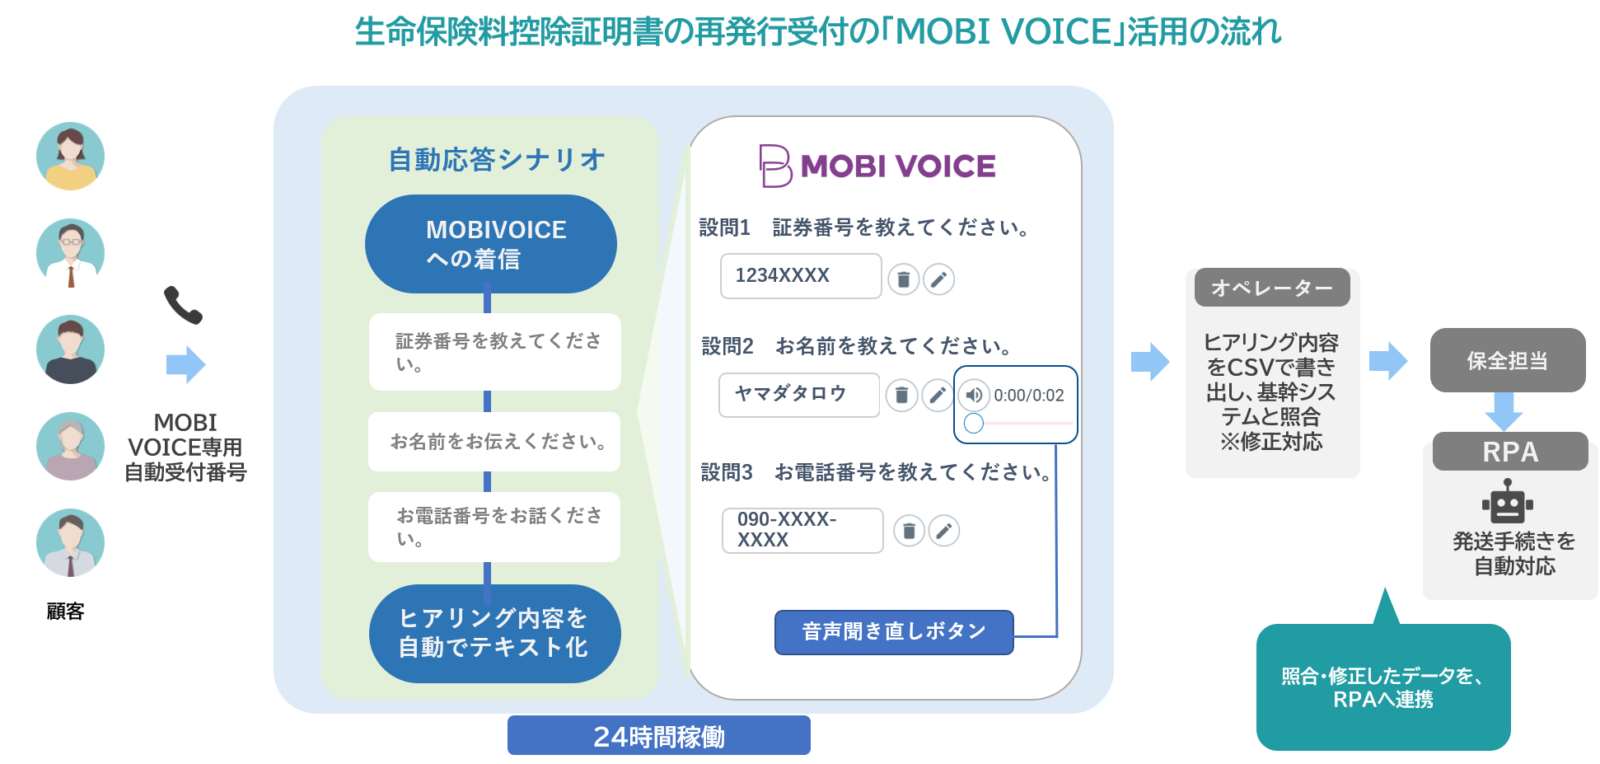 生命保険料控除証明書の再発行手続きの「MOBI VOICE」活用の流れ